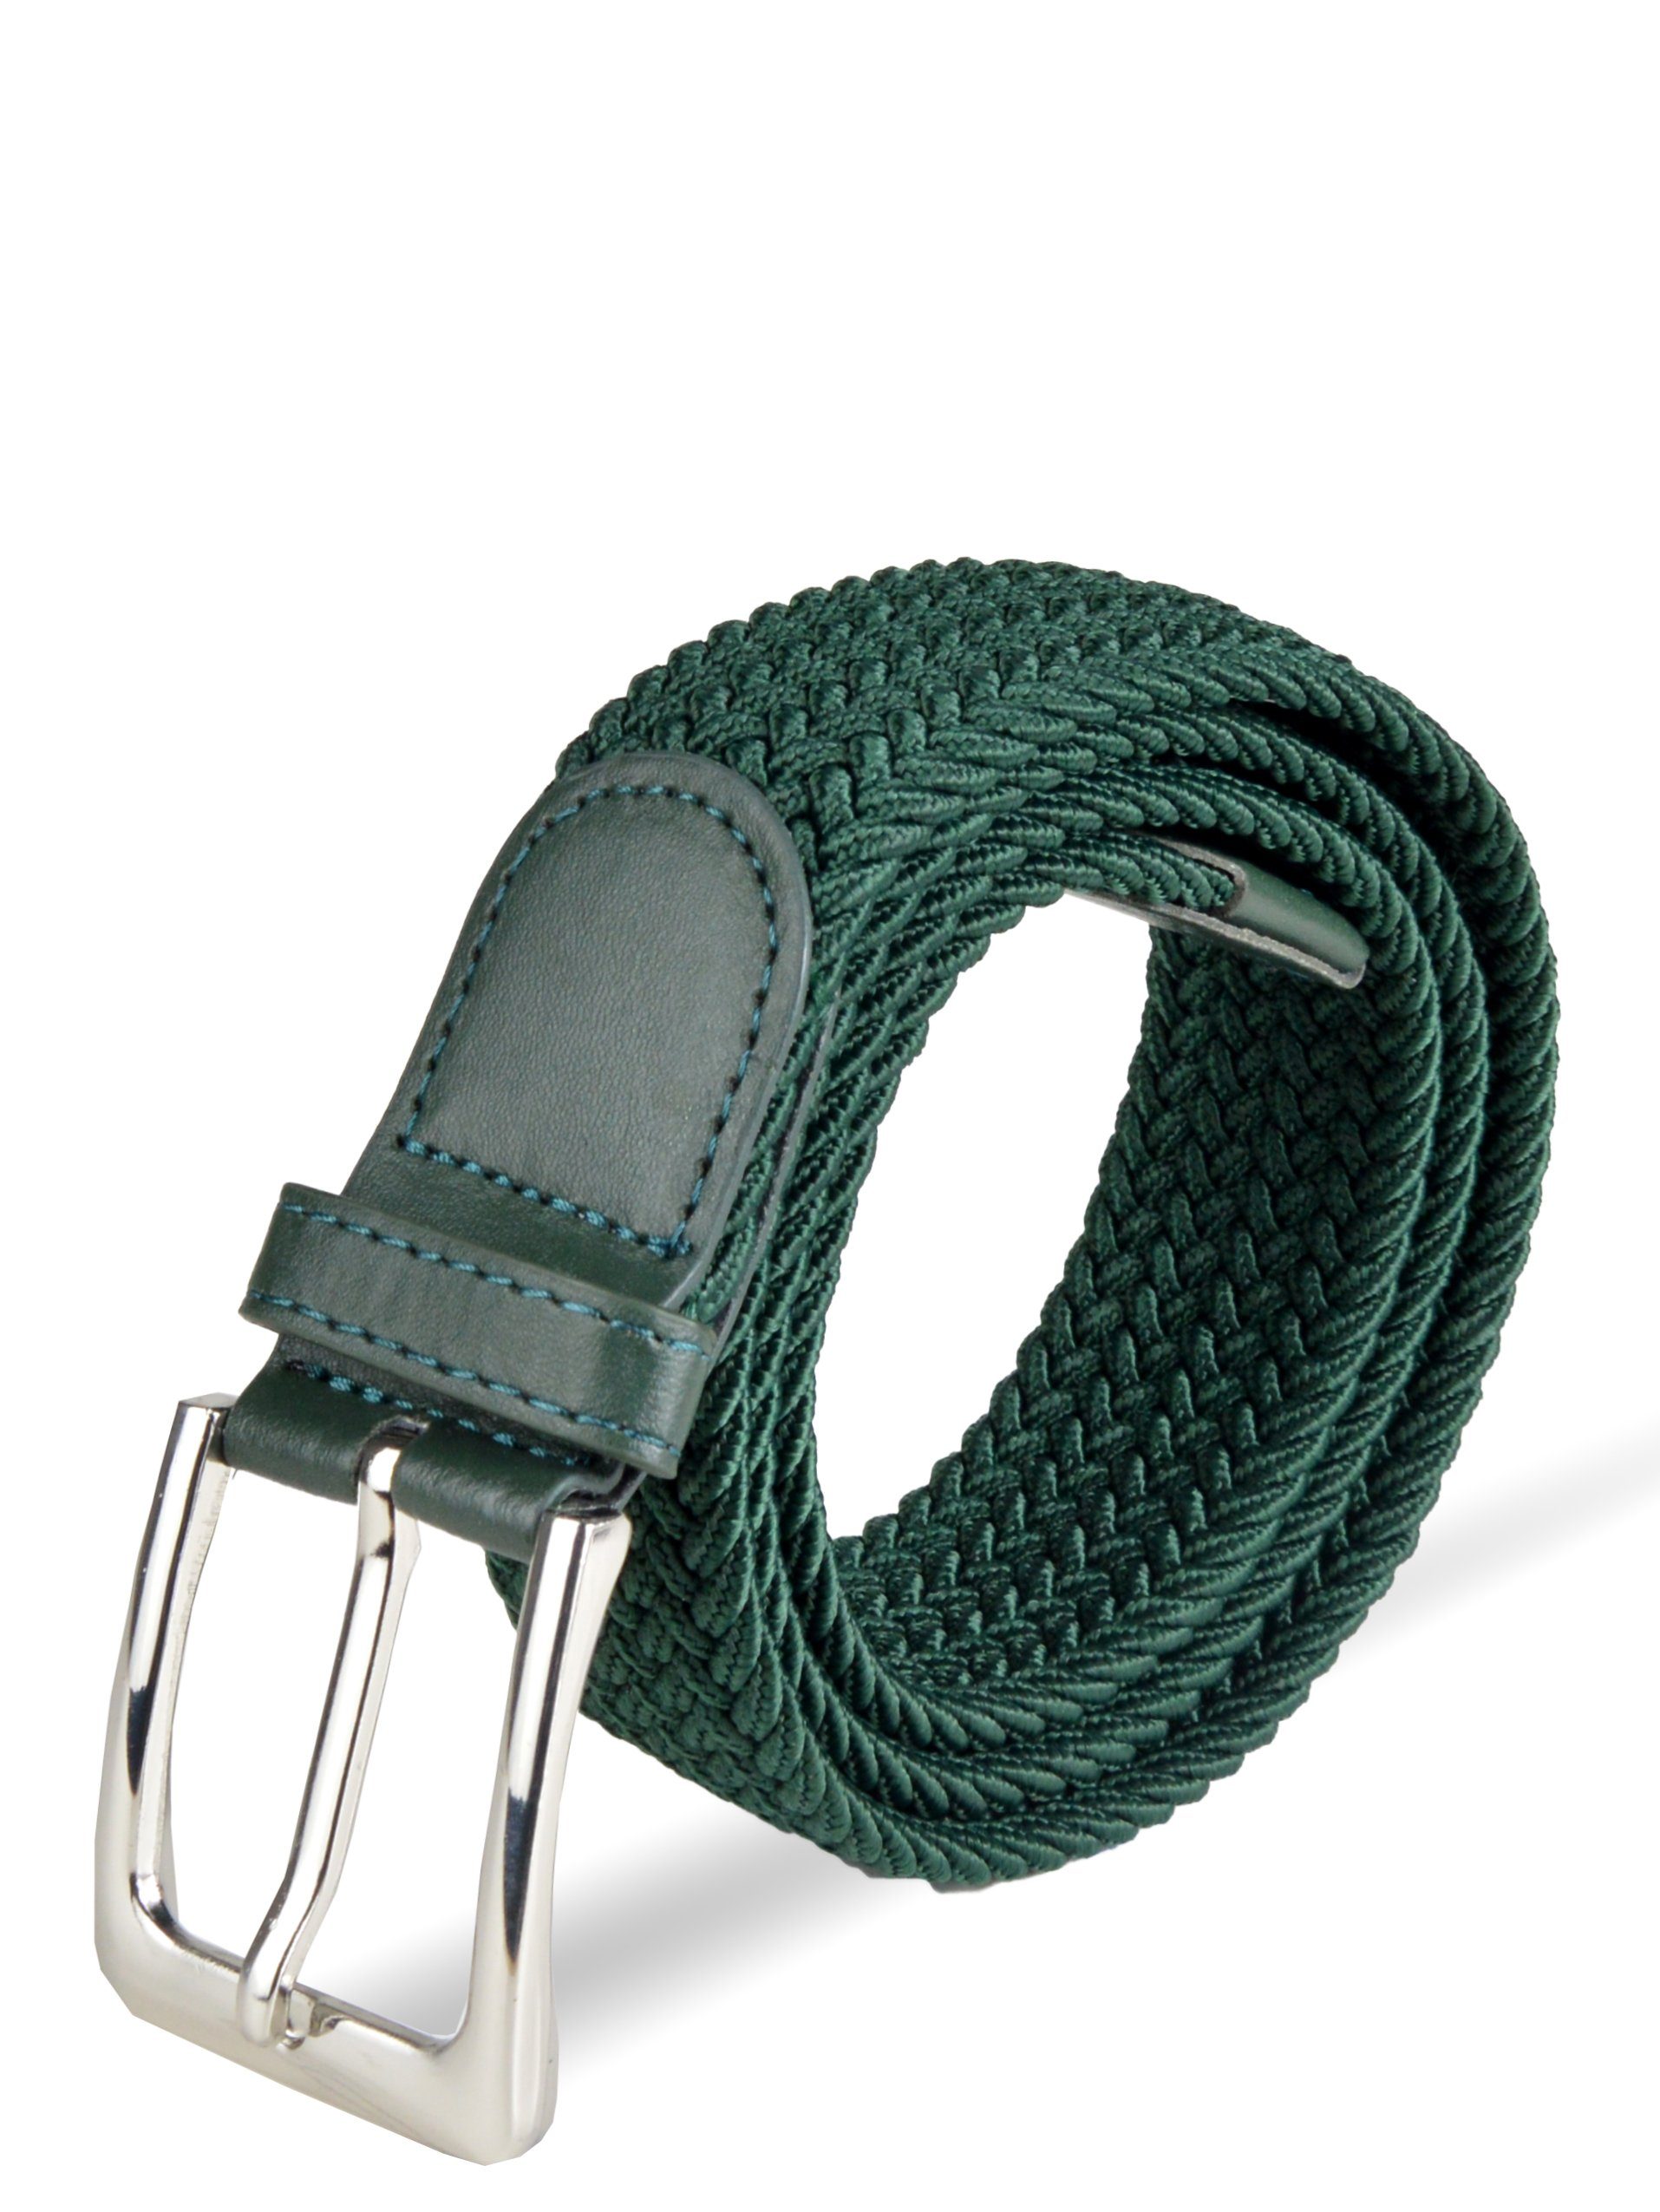 Socked Stoffgürtel Herren stufenlos Grün Flechtgürtel (105-150cm) einstellbar, elastischer Stretchgürtel